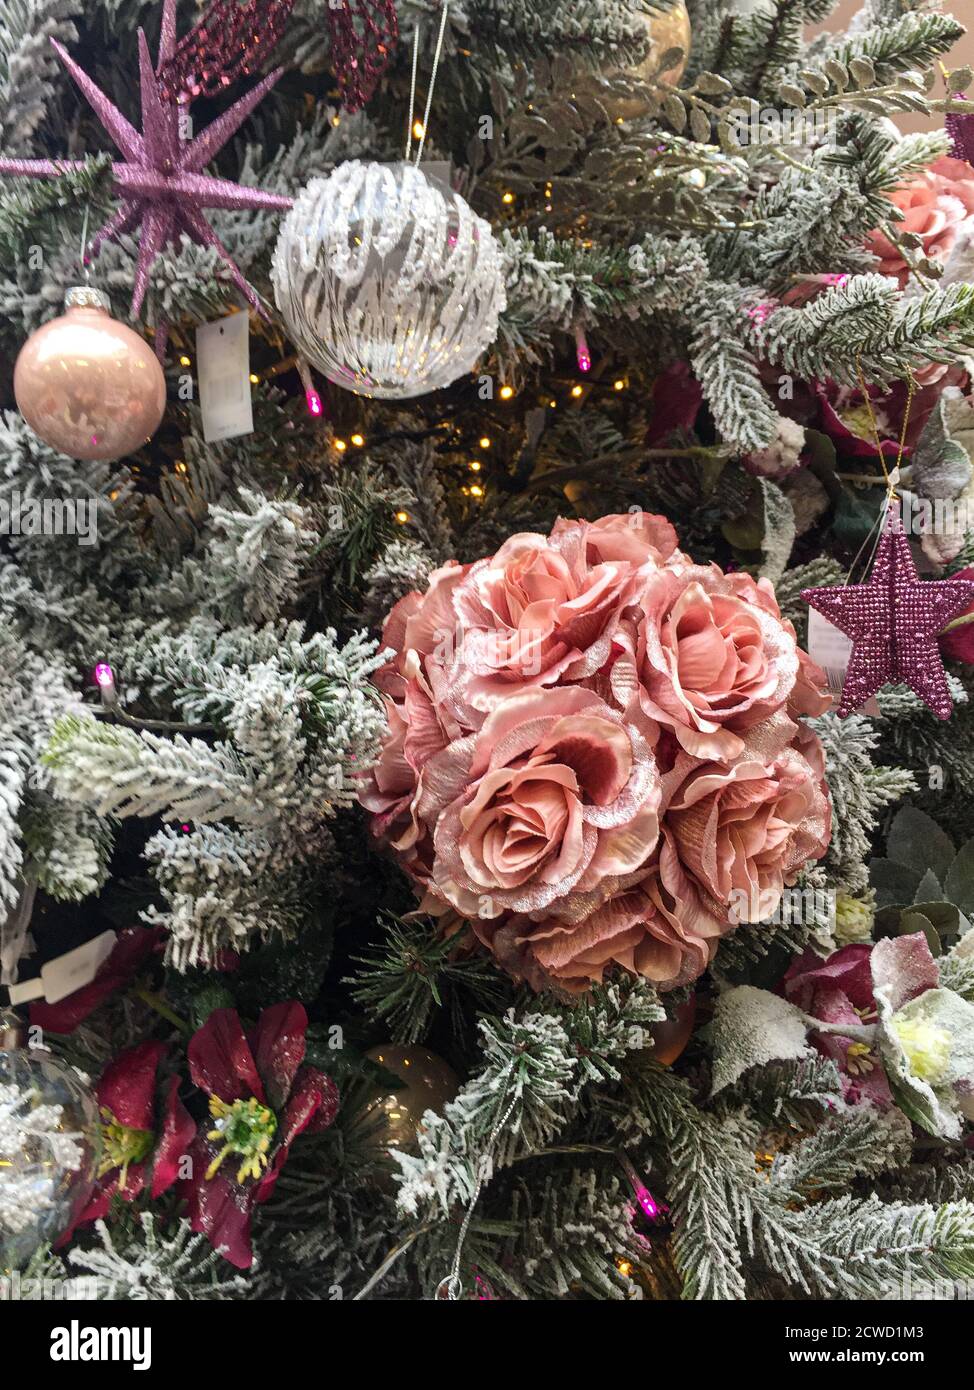 Dekorationen auf Weihnachtsbaum einschließlich rosa Rosen, Sterne und Kugeln. Stockfoto